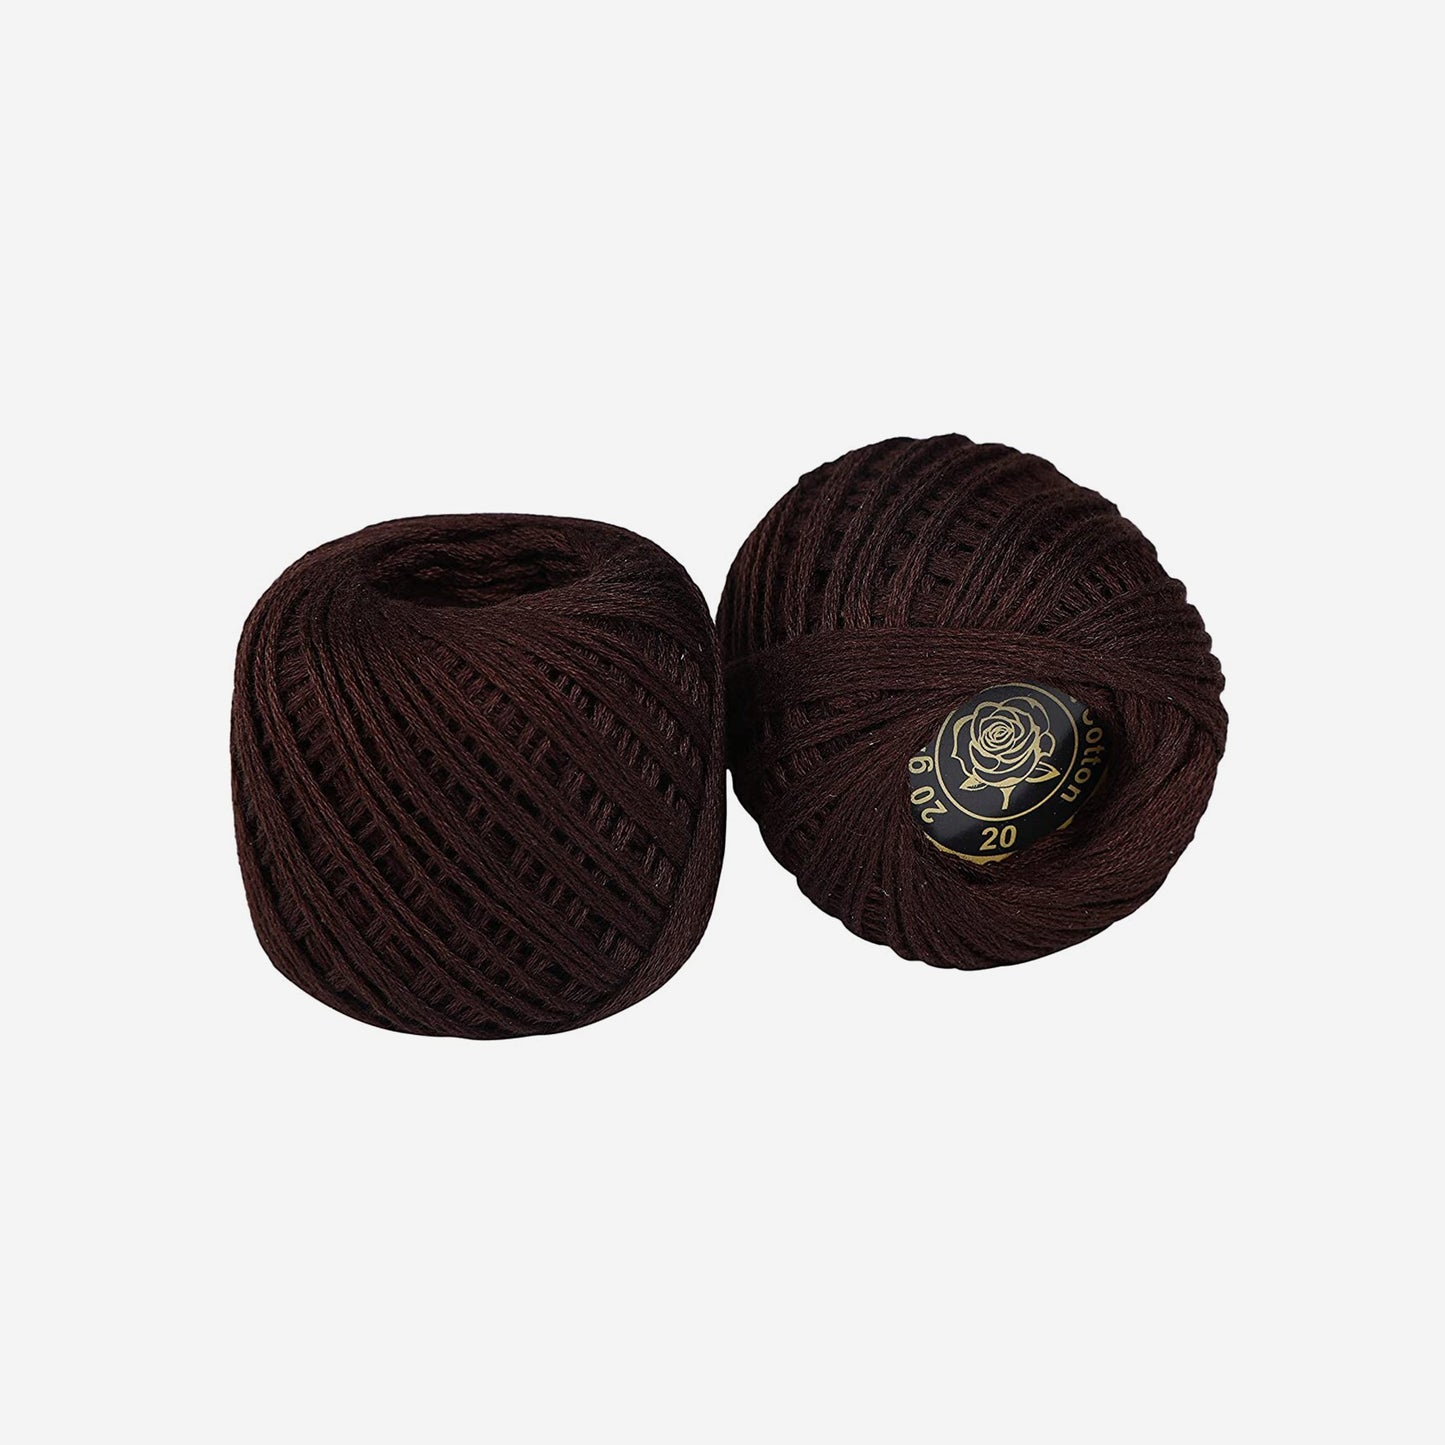 Hand-crochet hoops (Variation 21)